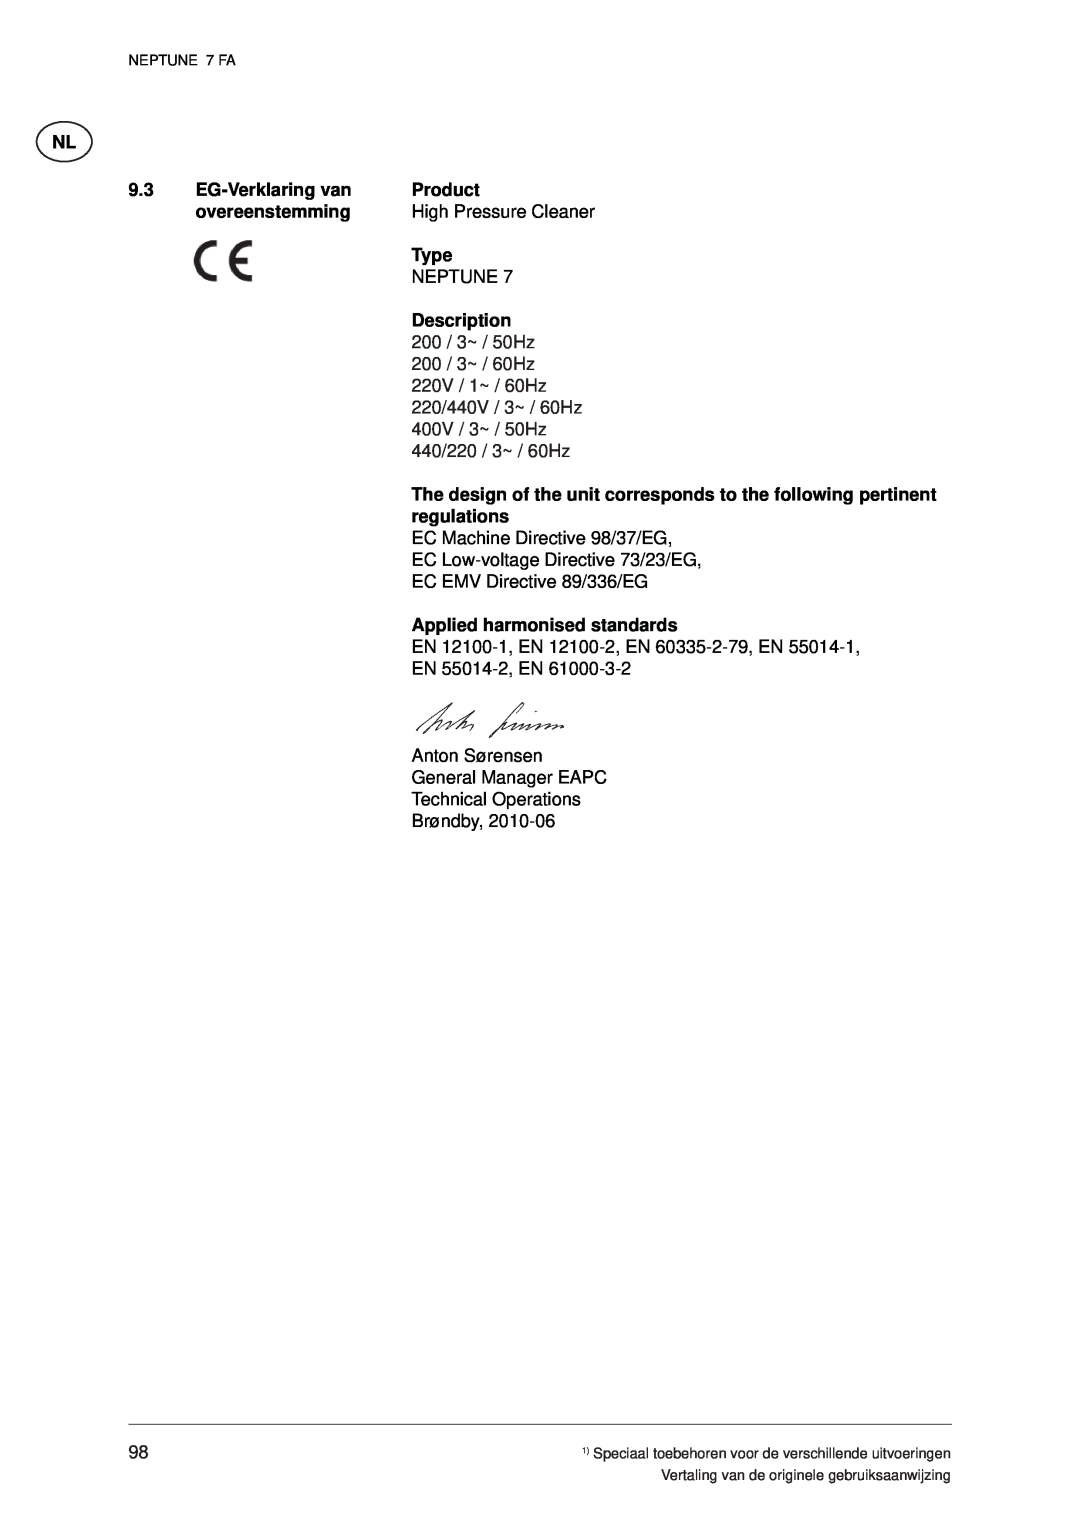 Nilfisk-ALTO 7 FA manual EG-Verklaring van, Product, overeenstemming, High Pressure Cleaner, Type, Description 